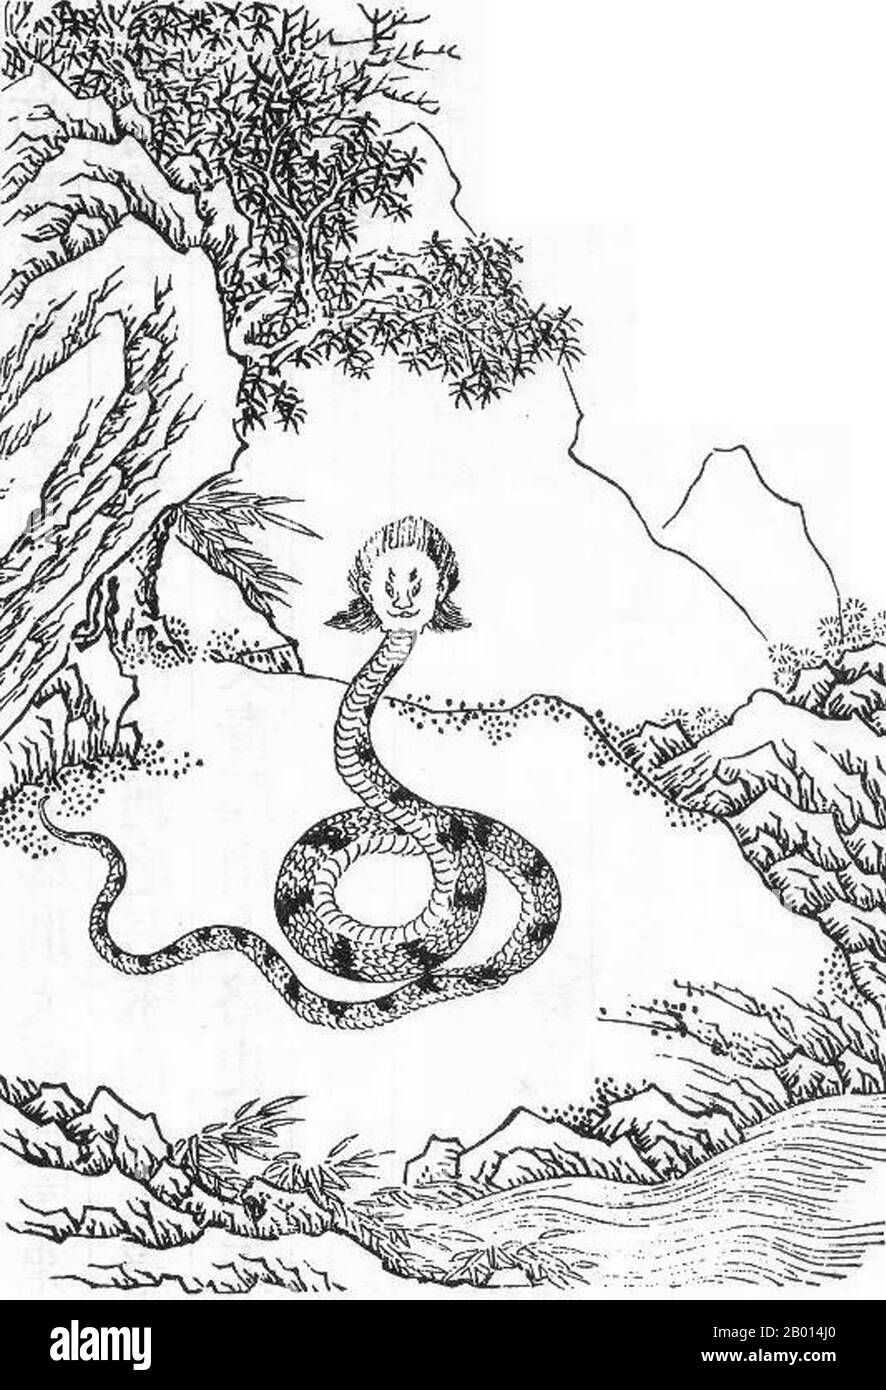 Chine : Nuwa (également nu Gua/Nugua), déesse de la mythologie chinoise ancienne connue pour la création de l'humanité et la réparation du mur du ciel. Illustration de 'Gujin Tushu Jicheng', c. 1700-1725. Nuwa est une déité créatrice. On dit que Nuwa existait au début du monde, aux côtés de son frère-mari Fuxi. Ils se sentaient seuls car il n'y avait pas d'animaux et ils ont donc commencé la création d'animaux et d'humains. Après six jours de création de divers animaux, ils ont fait des humains de l'argile jaune. Ils sont donc devenus les « parents de l'humanité ». Elle a également réparé les piliers du ciel quand ils ont été endommagés. Banque D'Images